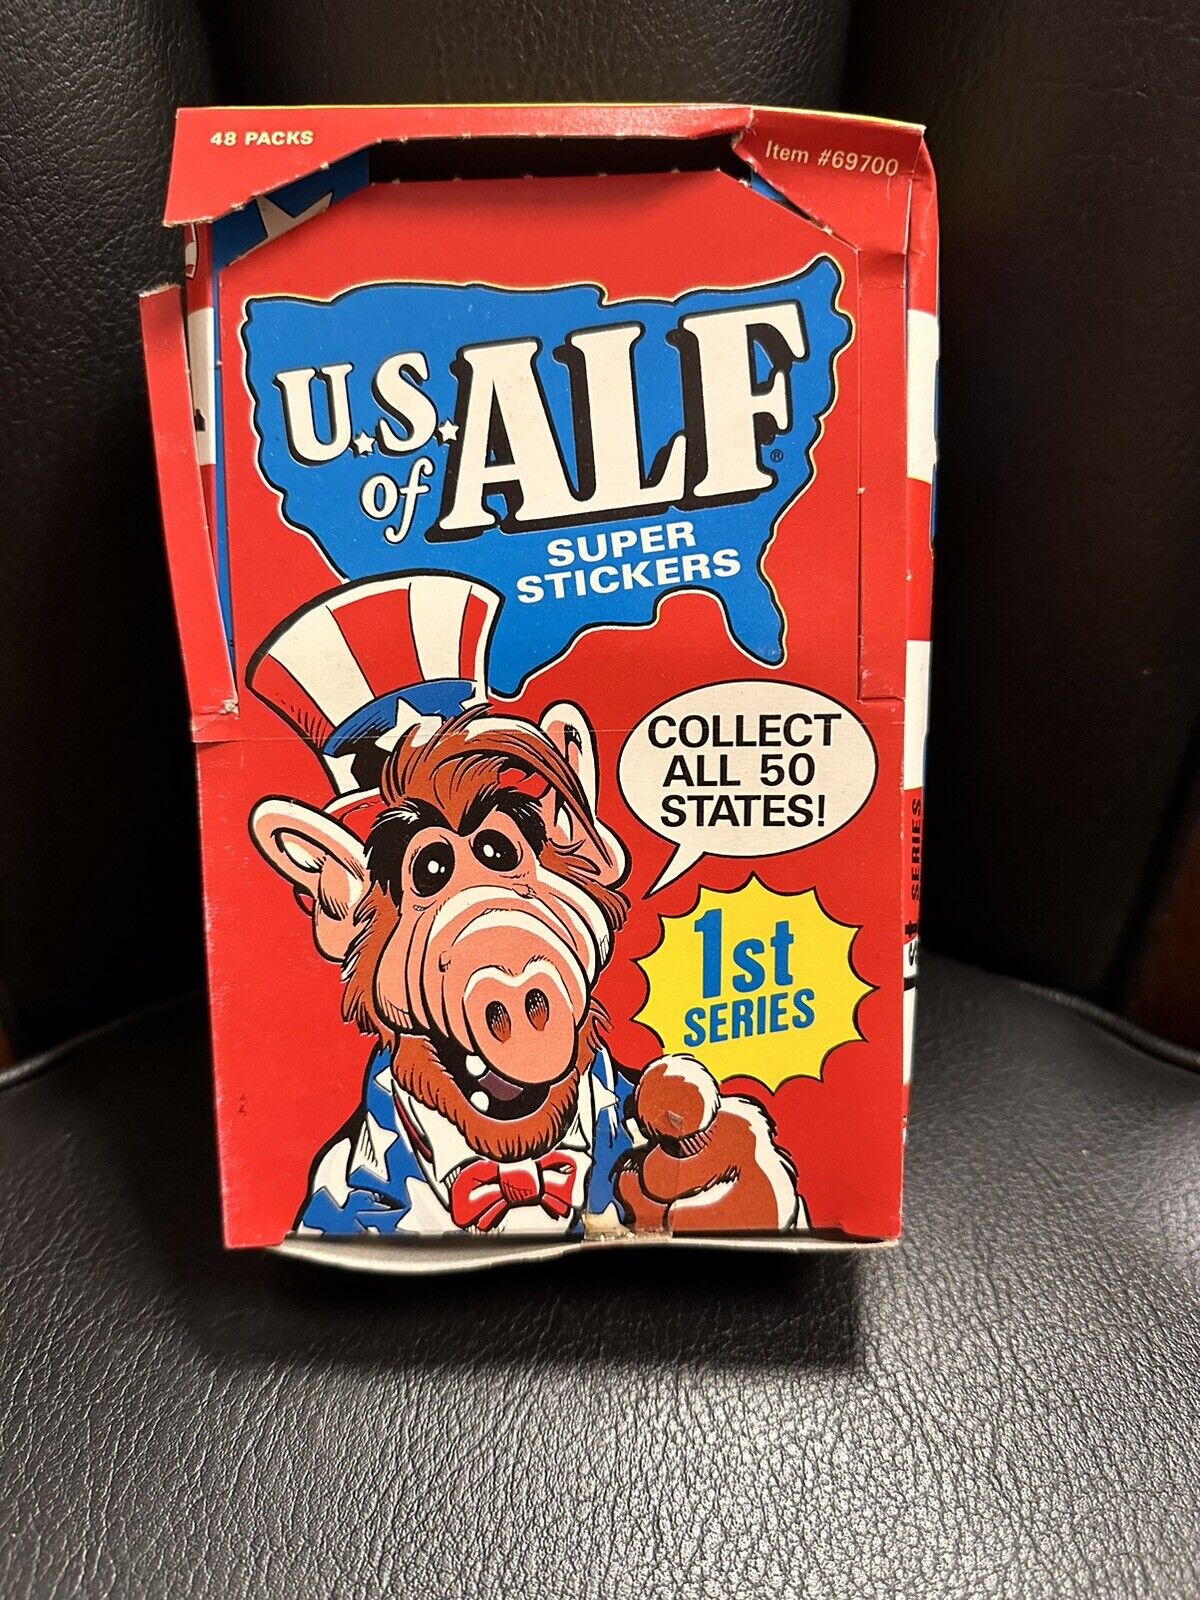 1987 US U.S. of Alf Super Stickers Card Box 1st Series 48 packs Zoot